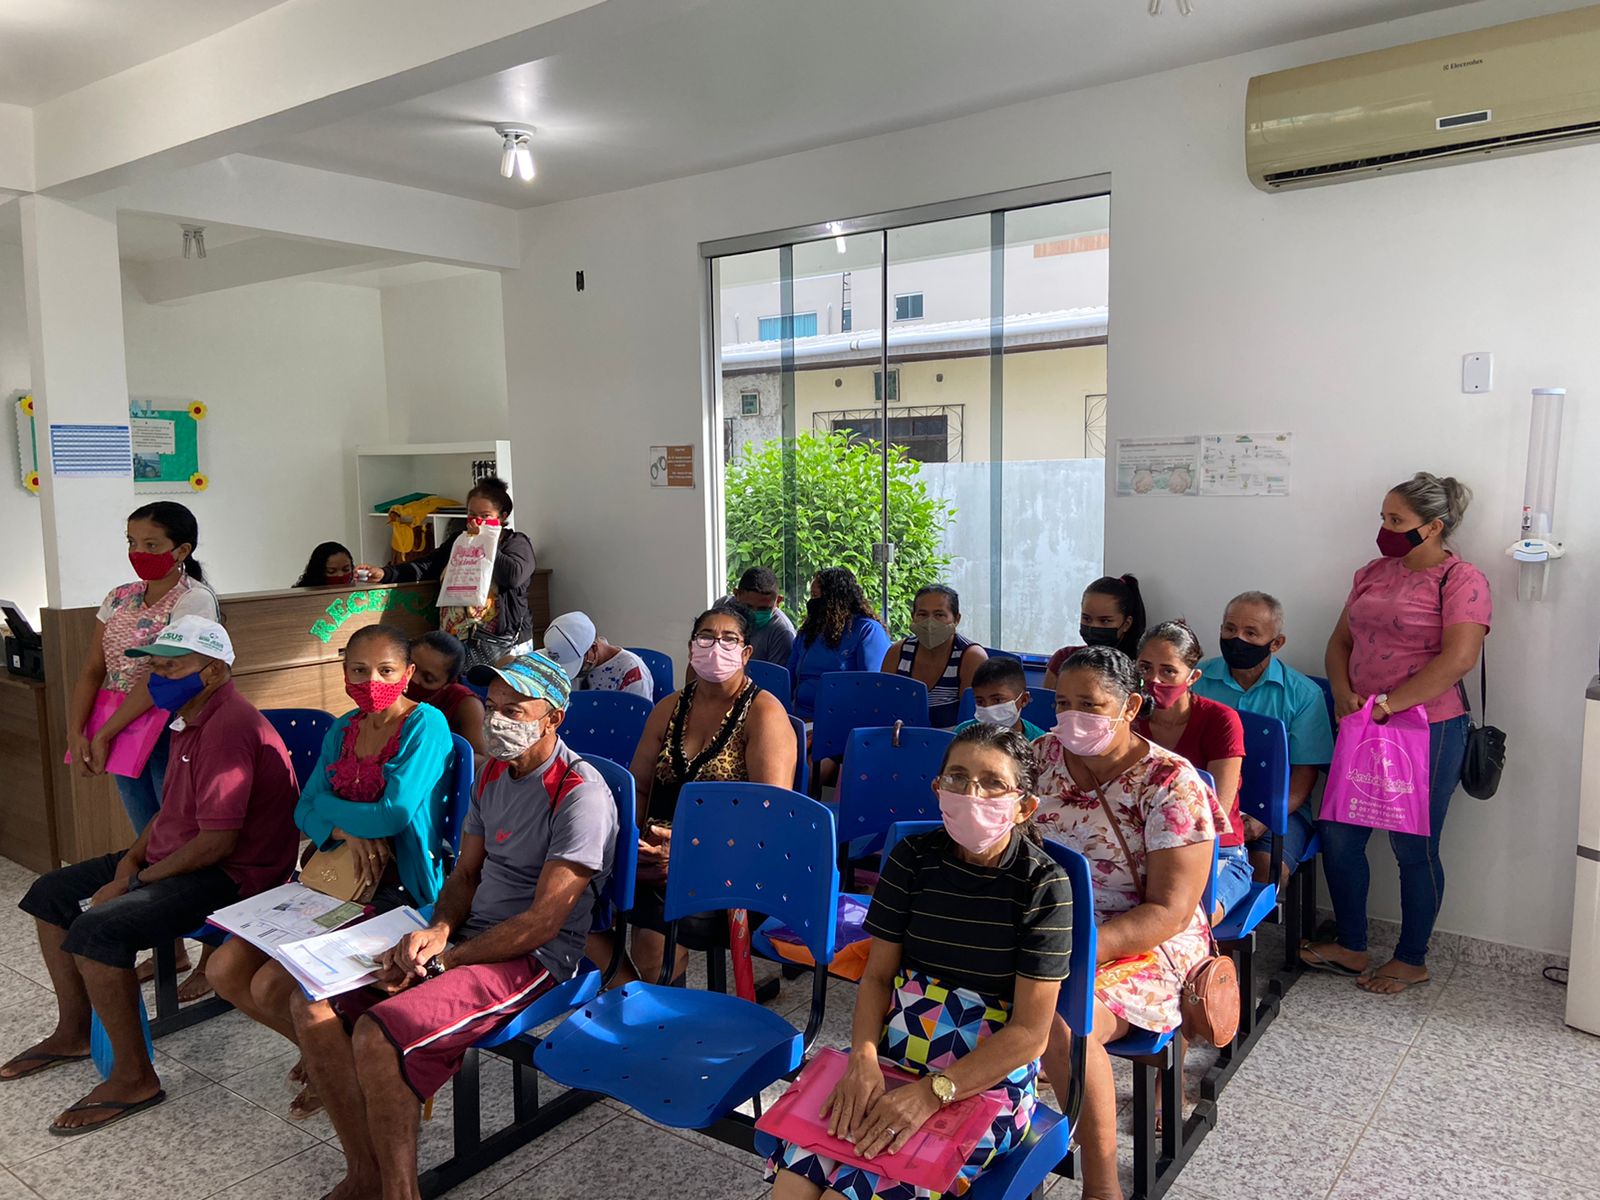 INSTITUCIONAL: JEF da Seção Judiciária do Amazonas amplia acesso à Justiça no município de Carauari/AM incluindo perícia domiciliar